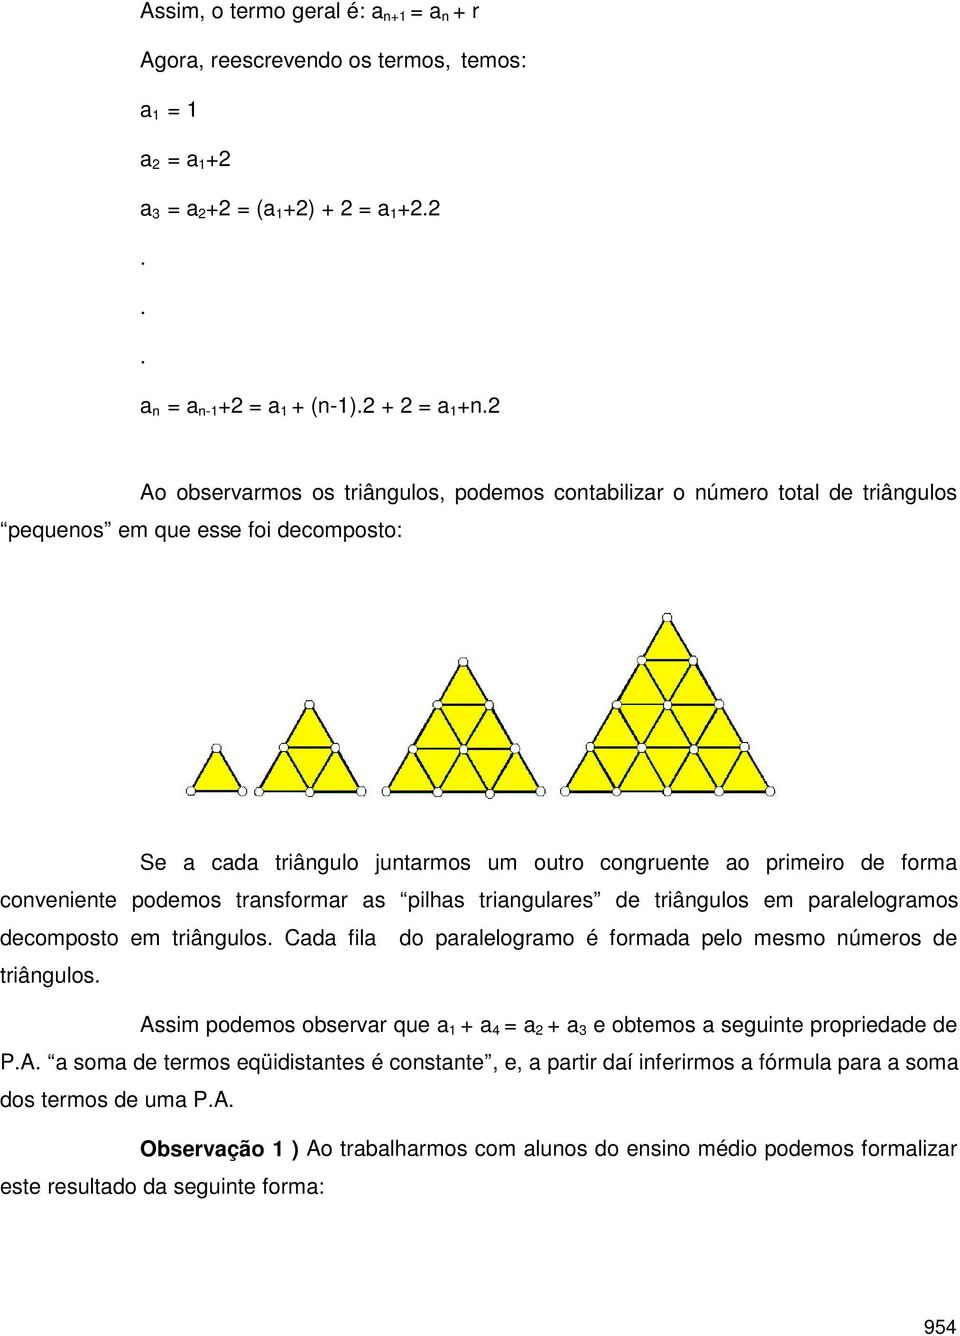 decomposto em triângulos Cd fil do prlelogrmo é formd pelo mesmo números de triângulos Assim podemos observr que e obtemos seguinte propriedde de PA som de termos